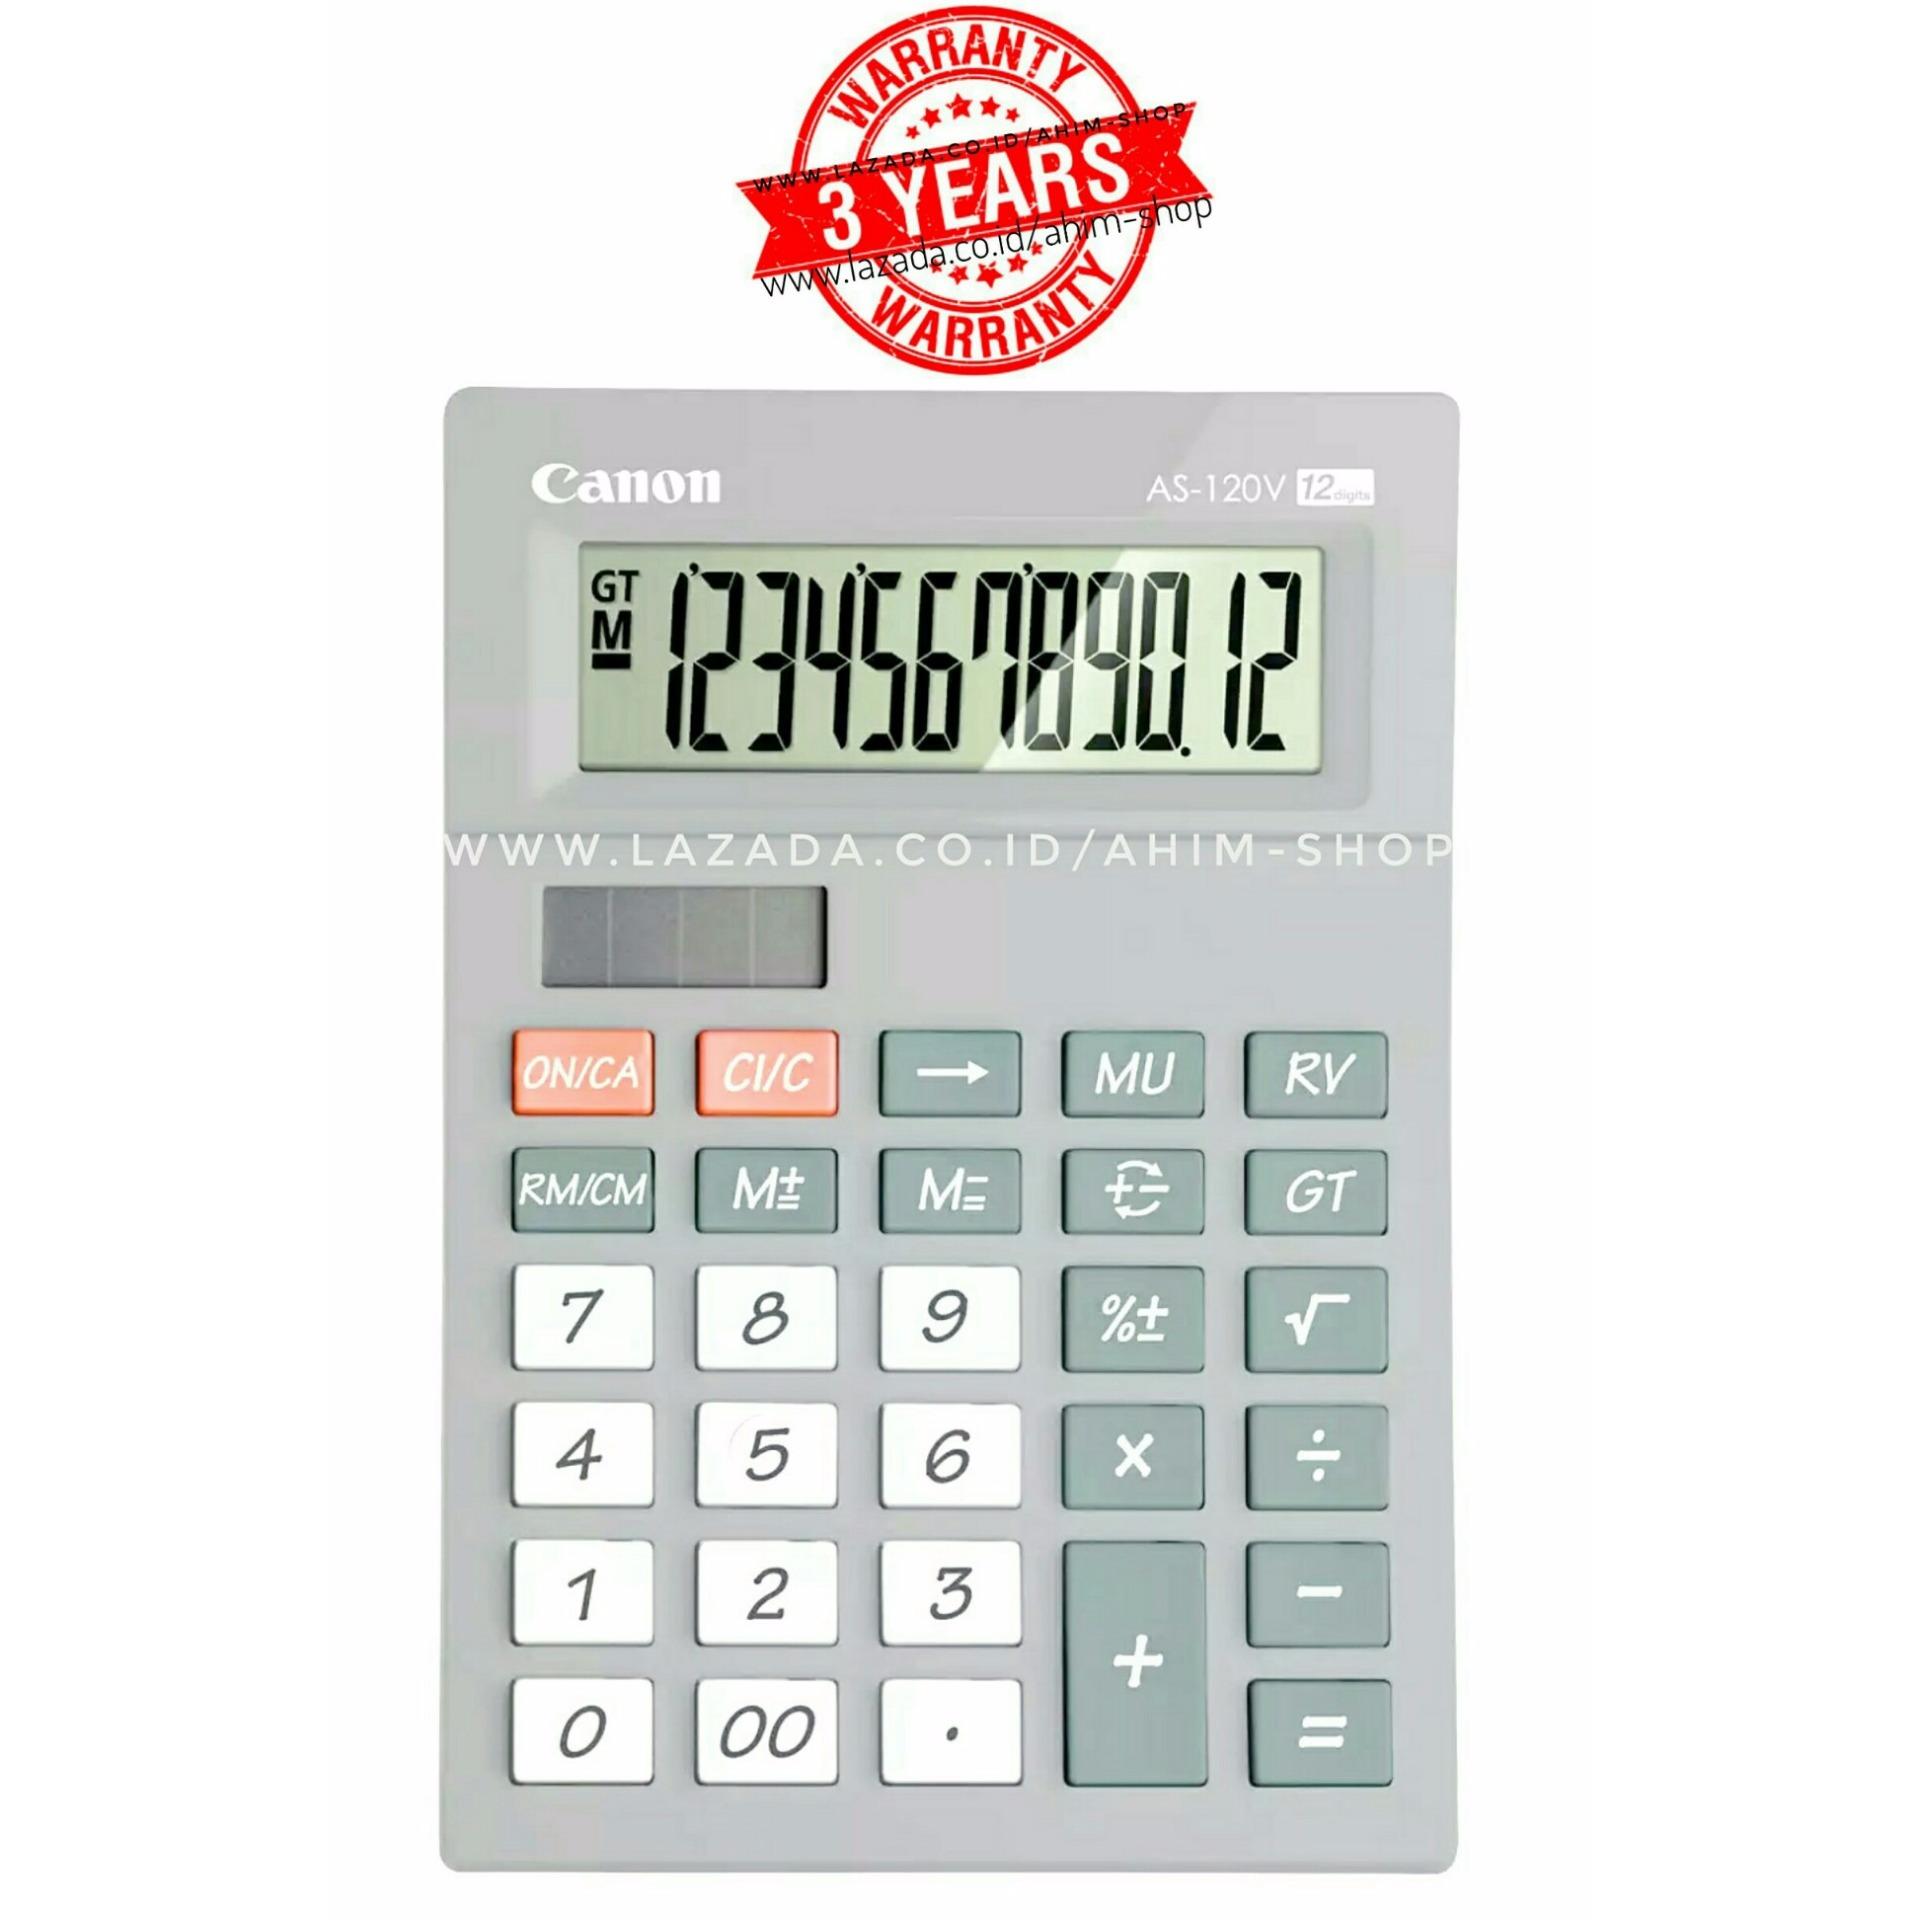 Canon Calculator AS-120V Kalkulator 12 Digit Tenaga Baterai & Matahari – Pastel Grey